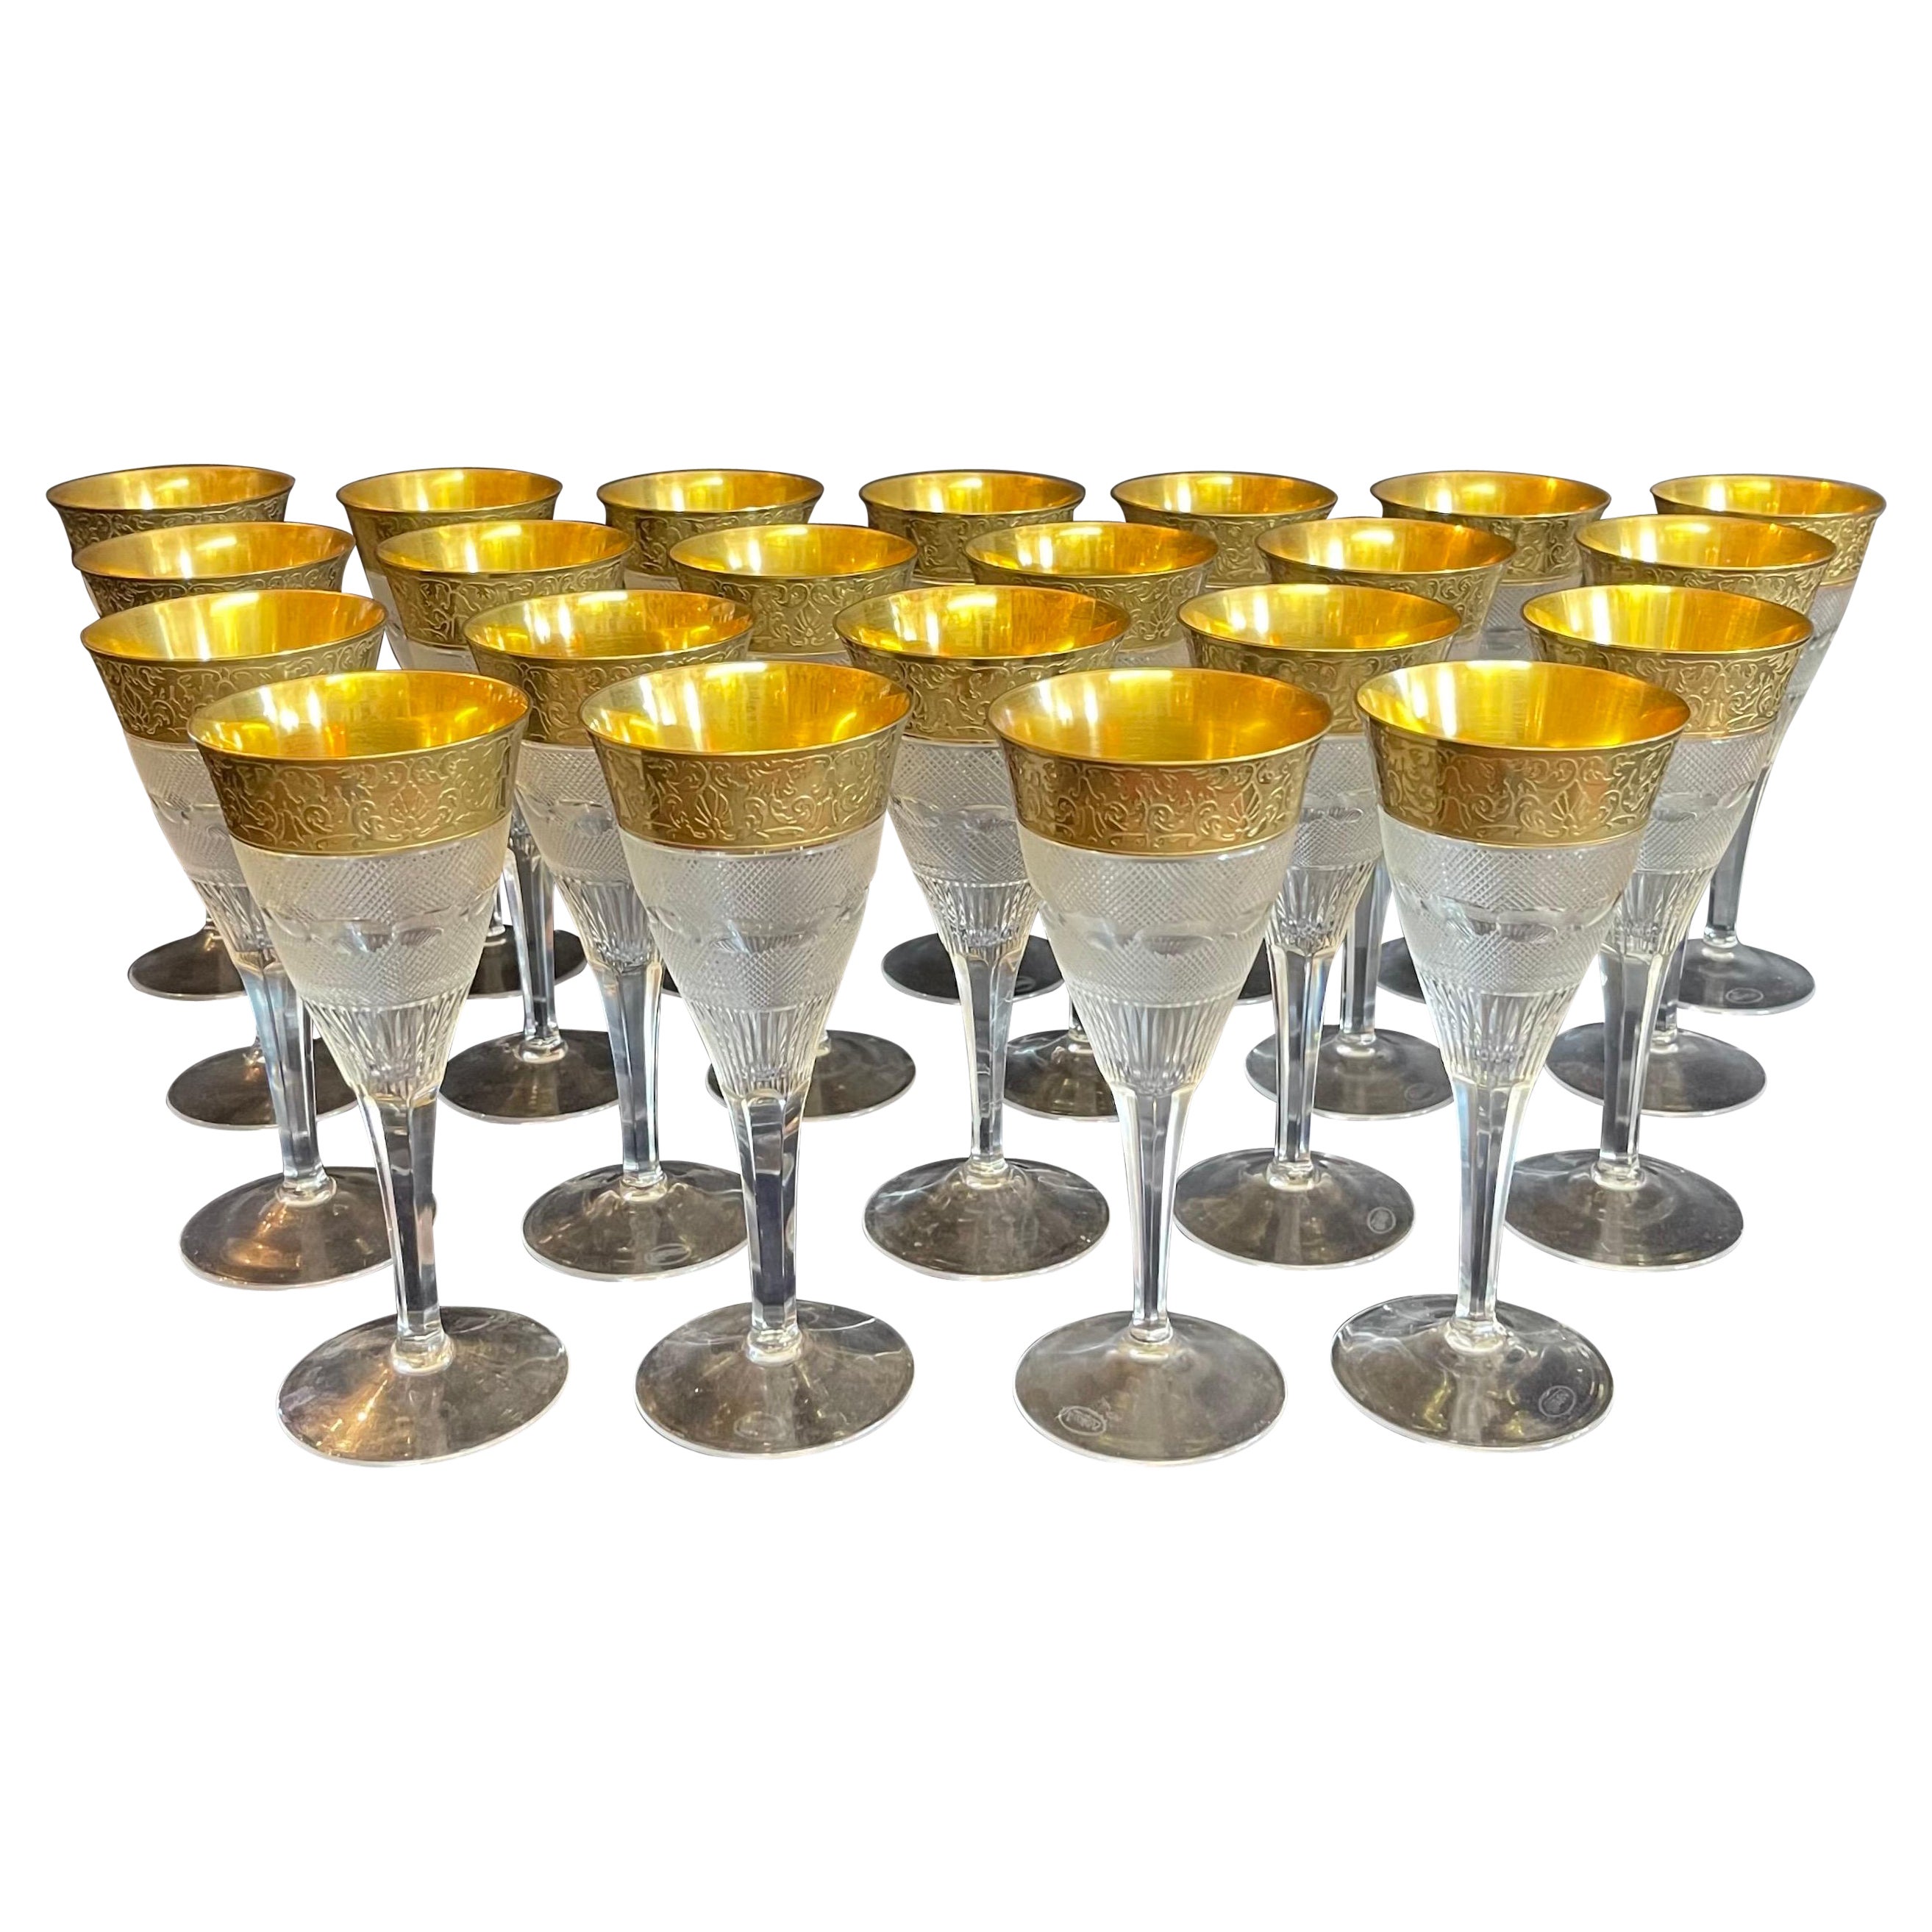 Magnifique ensemble 22 gobelets à eau Moser en cristal superbe taillé et bordure en or 24 carats